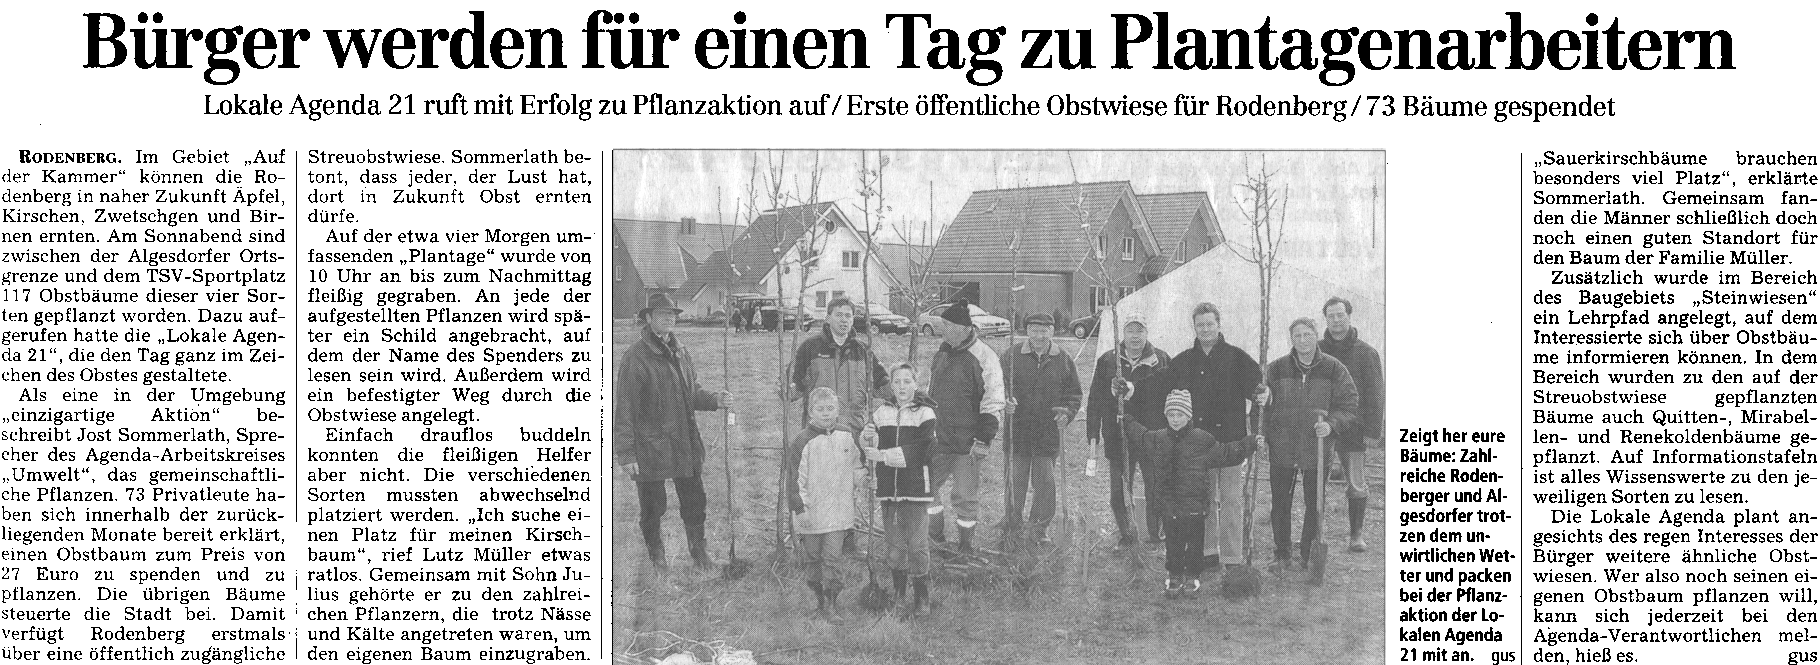 Schaumburger Nachrichten vom 15.11.2004 Seite 12